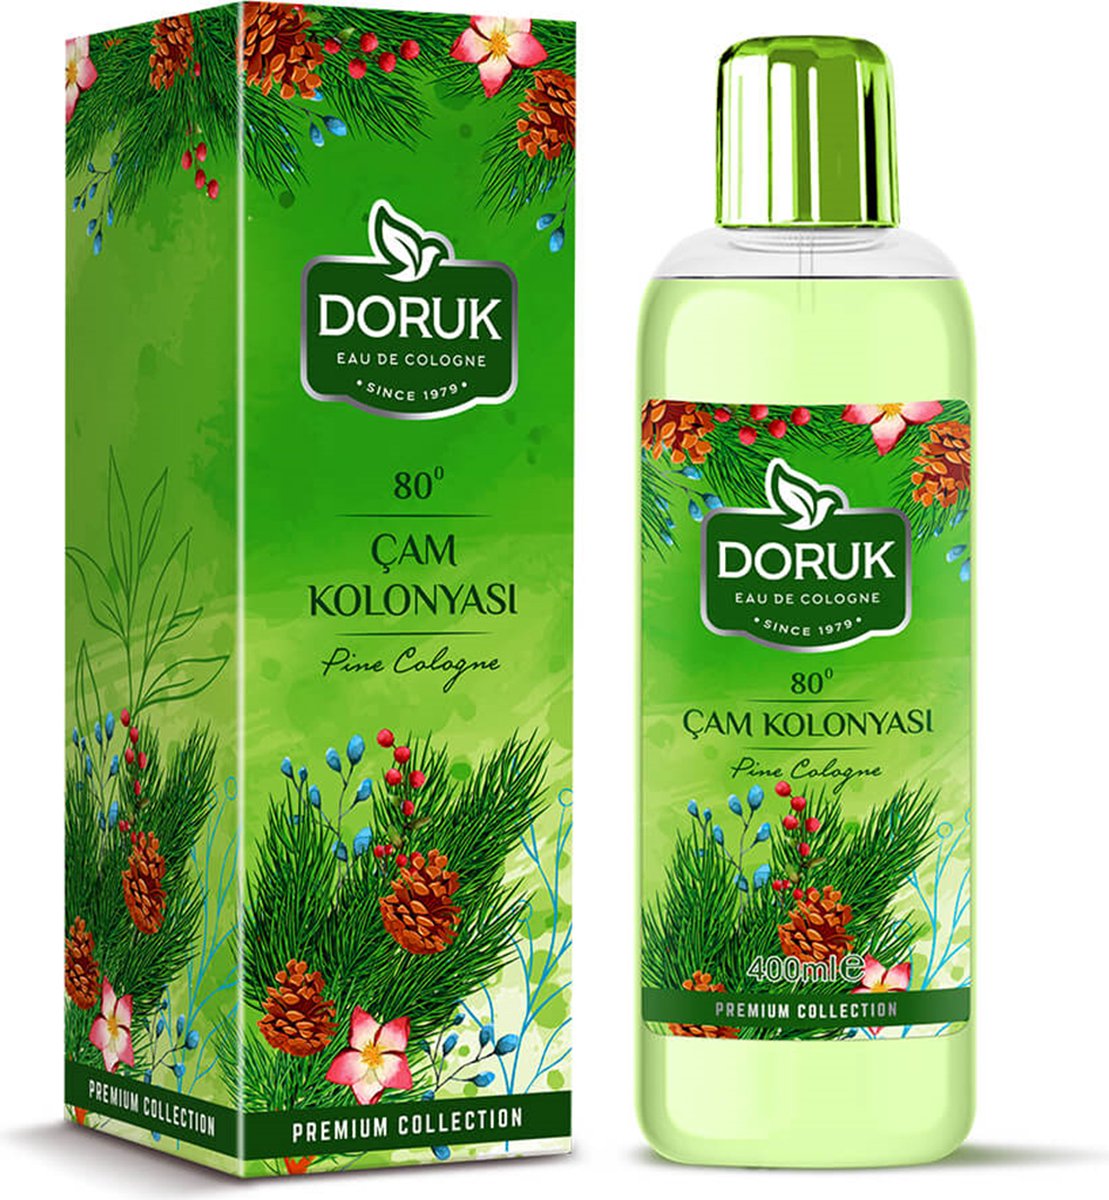 Doruk - Eau de cologne 400ml - 80° alcohol - pijnboom cologne - Optimale desinfectie van handen